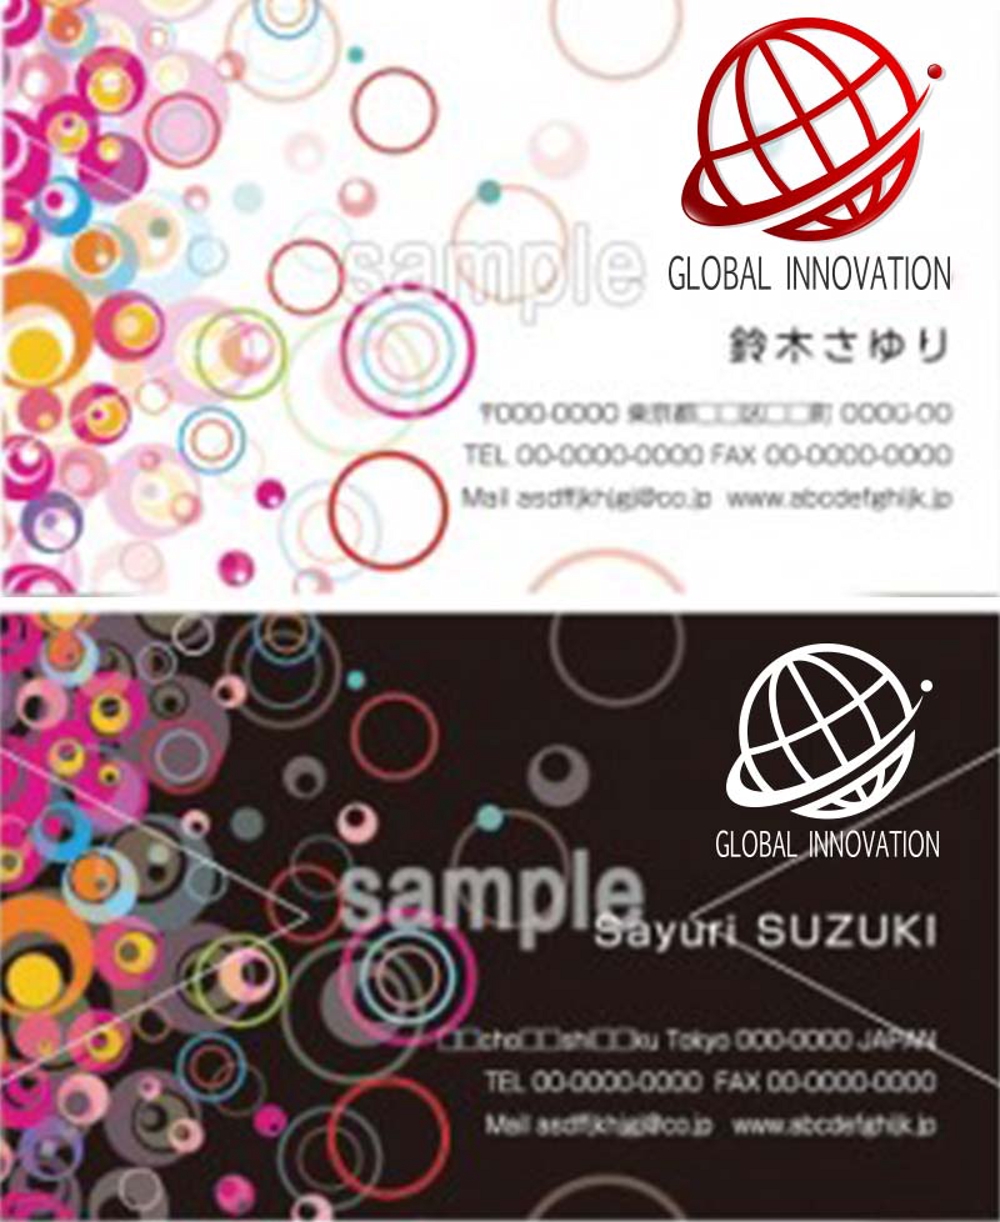 GLOBAL INNOVATION2_IMG01.jpg